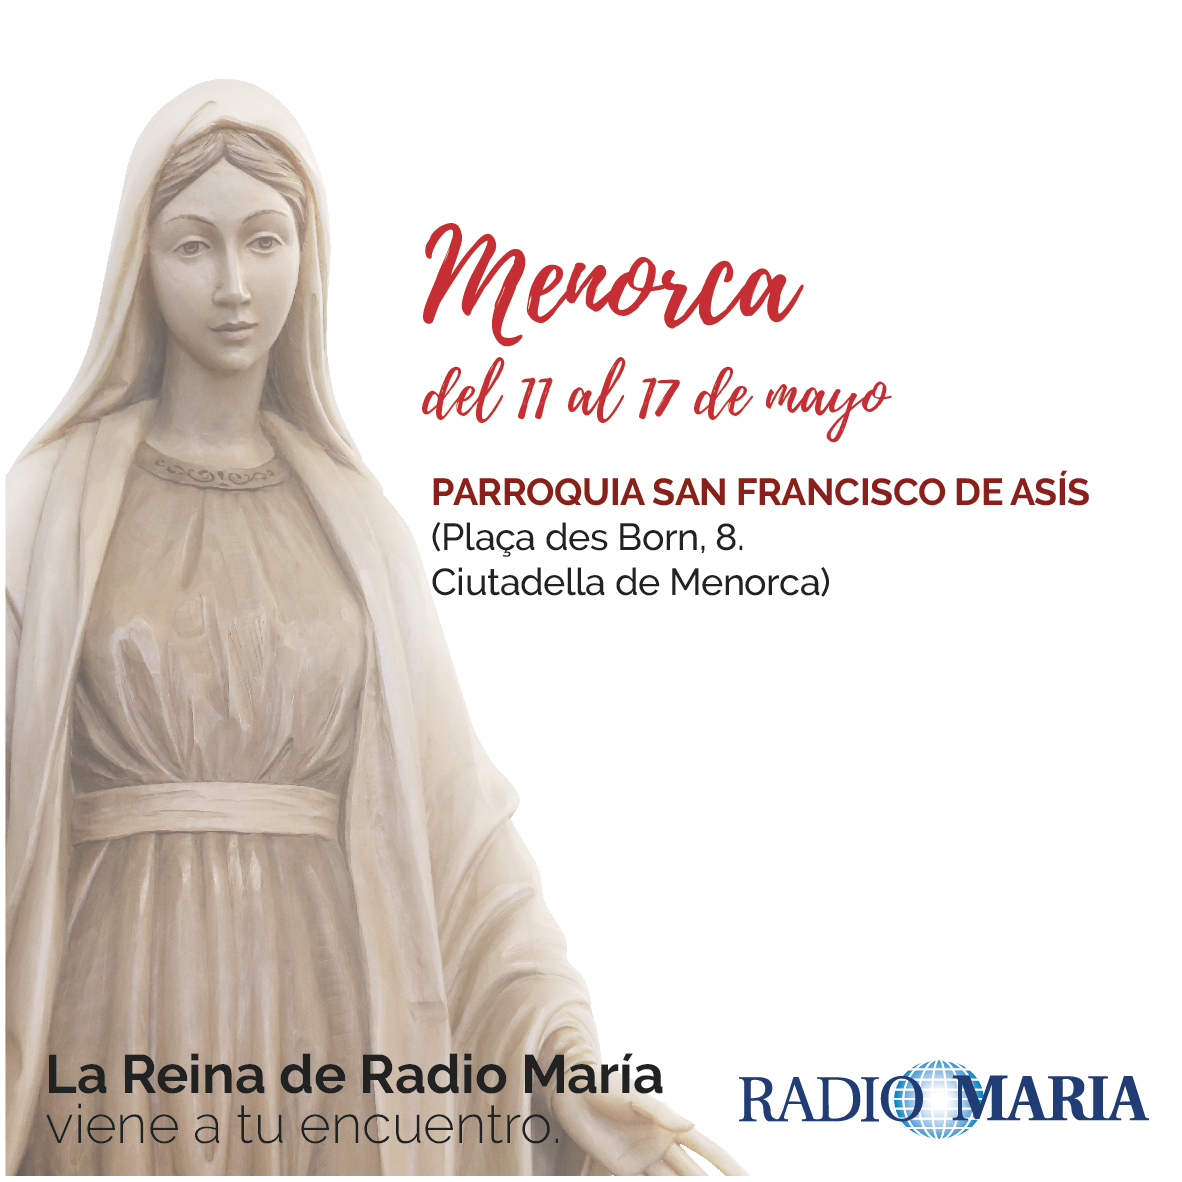 La Reina de Radio María visita Menorca